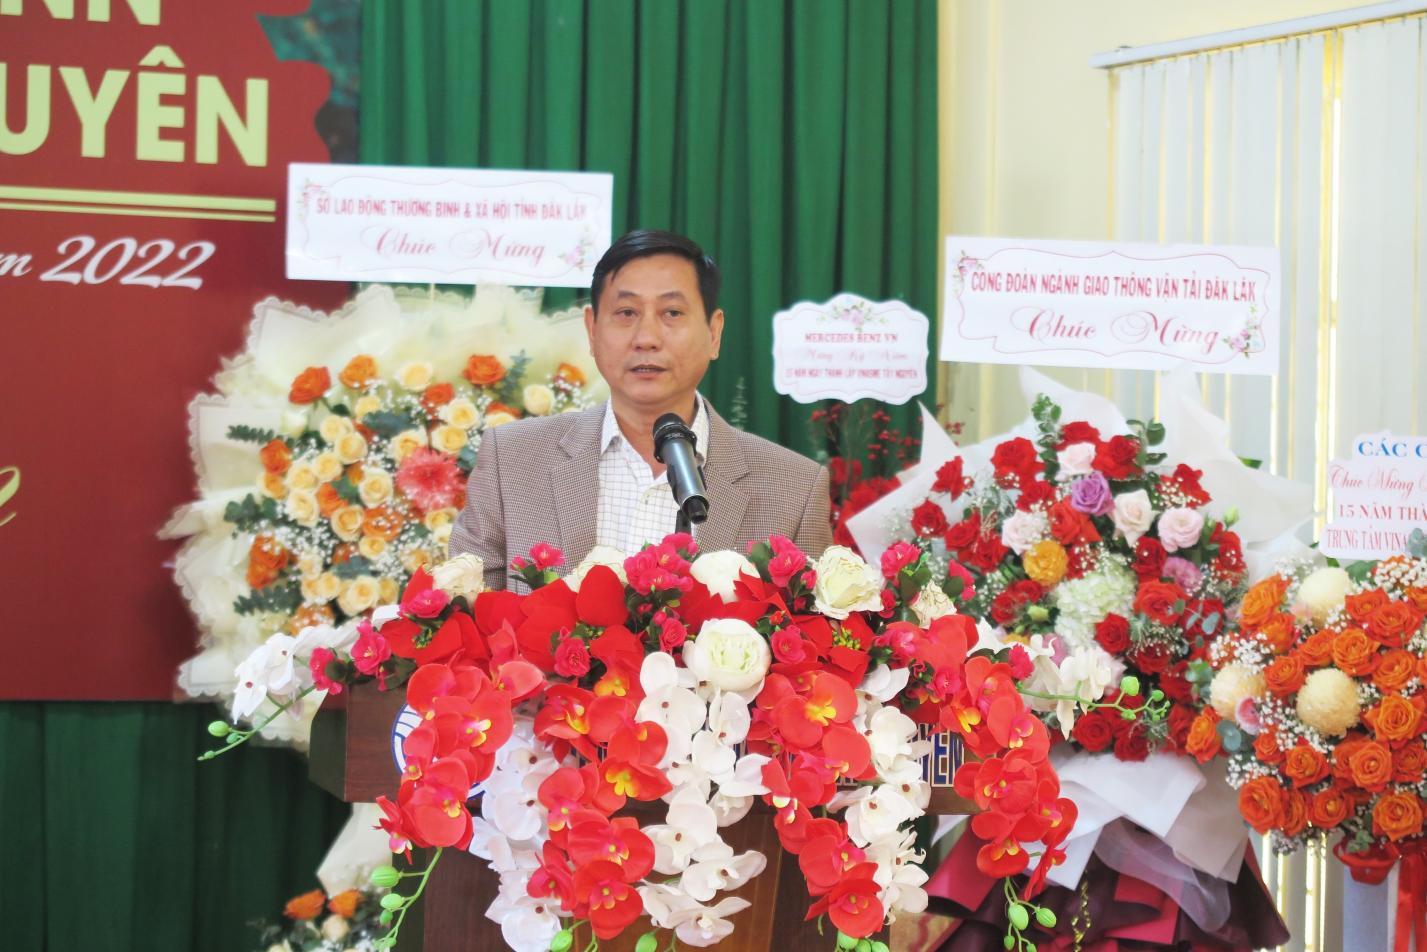 Ông Lê Đình Minh, phó Giám đốc sở GT-VT tỉnh Đăk Lăk phát biểu ý kiến tại buổi lễ.